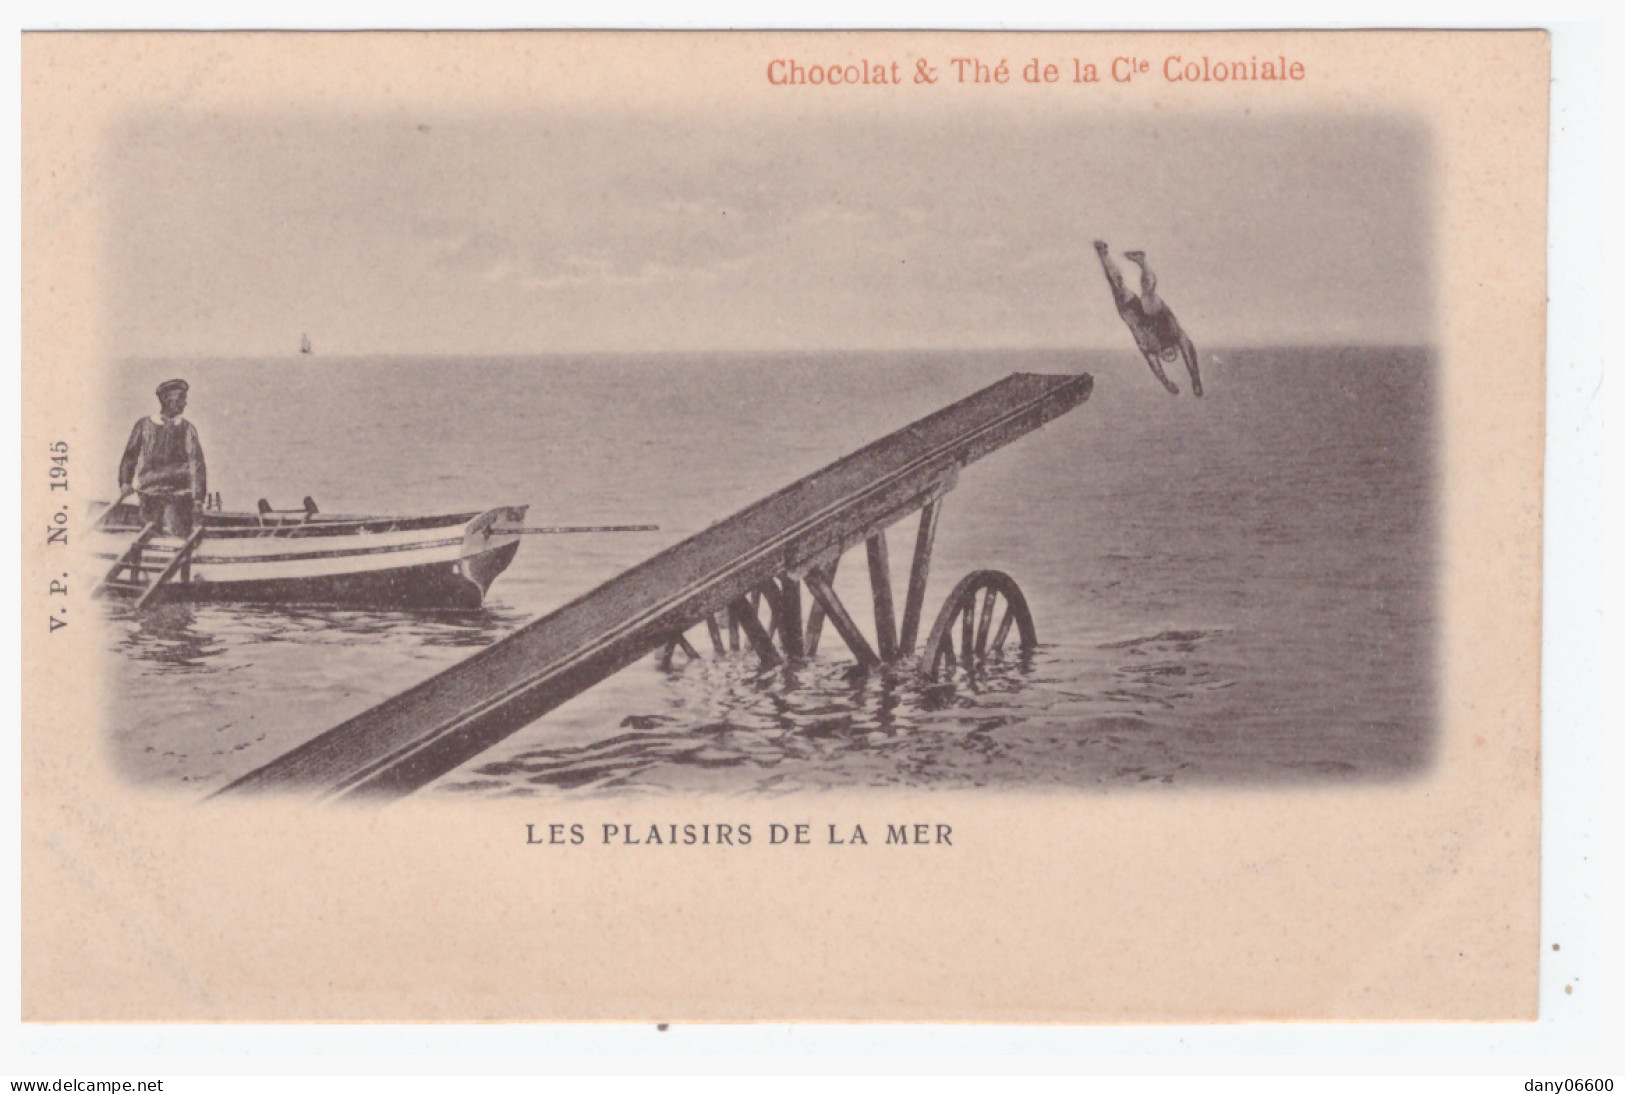  Les Plaisirs De La Mer - CHOCOLAT & THE DE LA Cie COLONIALE  (carte Animée) - Swimming